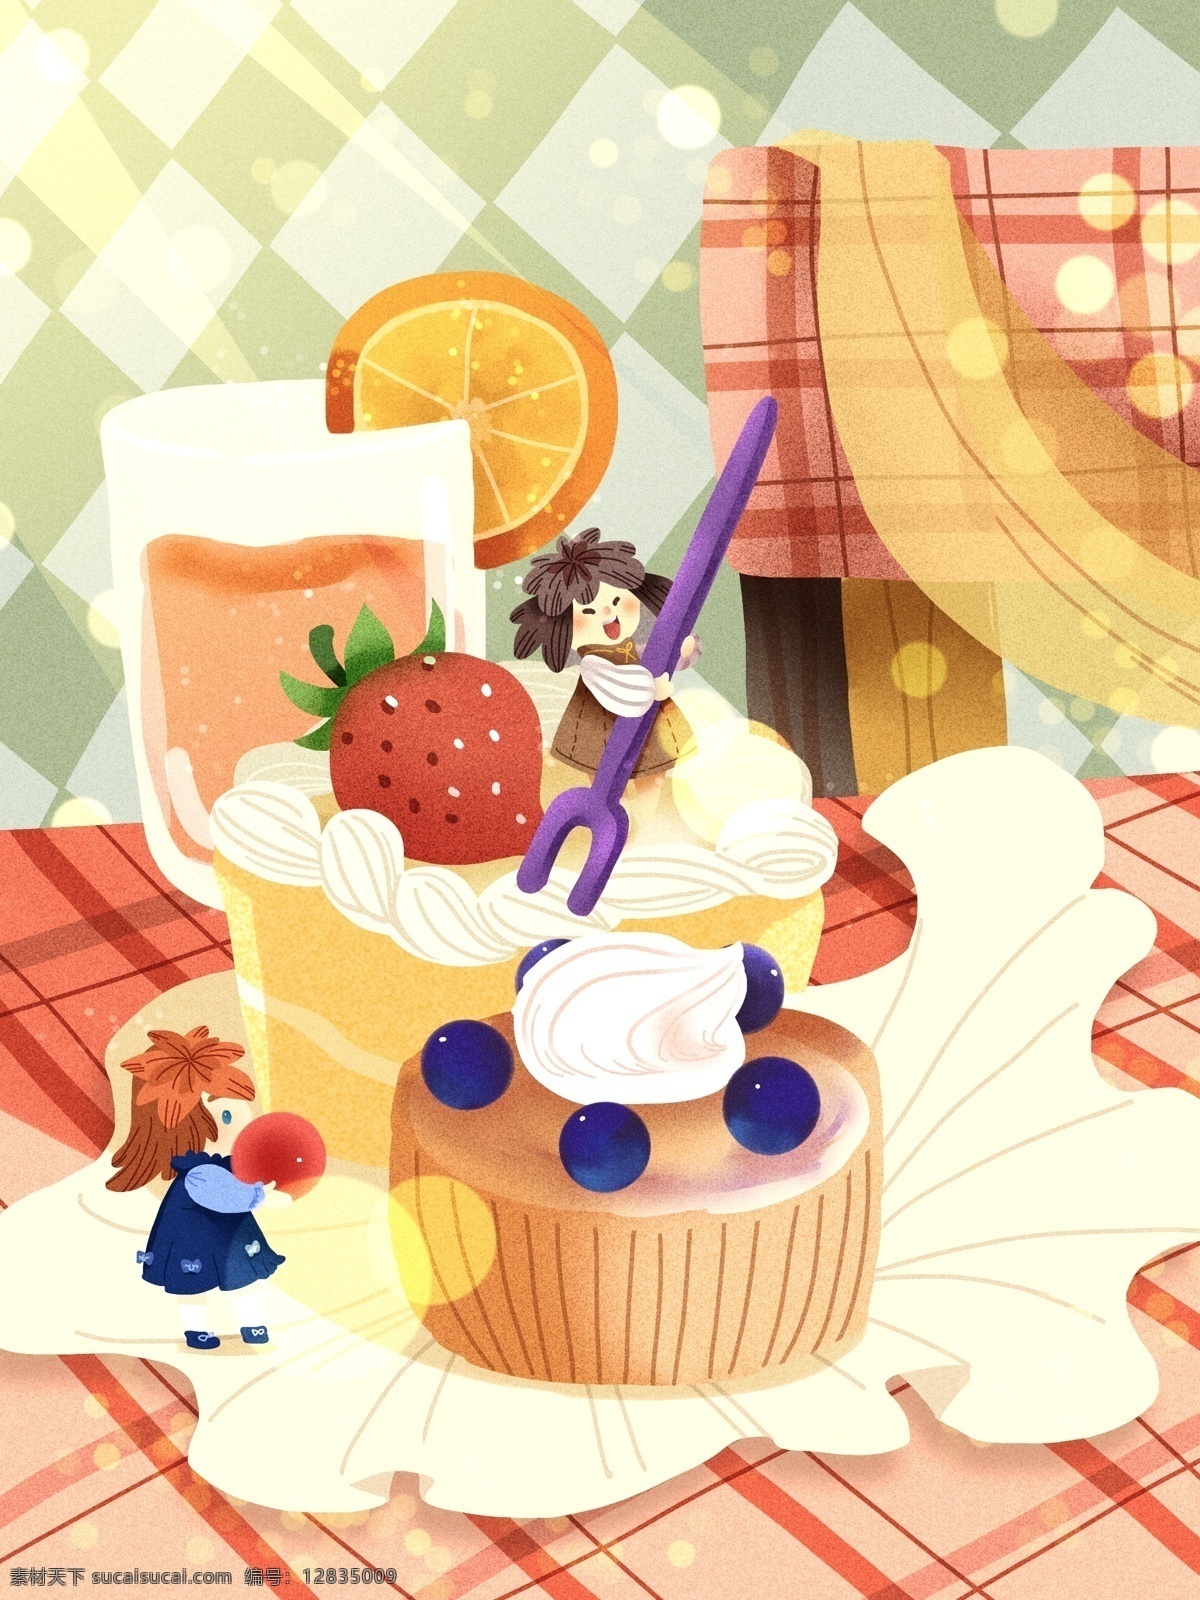 美食 大作 战 草莓 蛋糕 小精灵 开心 快乐 光 饮料 甜品 蓝莓 橙子 午后